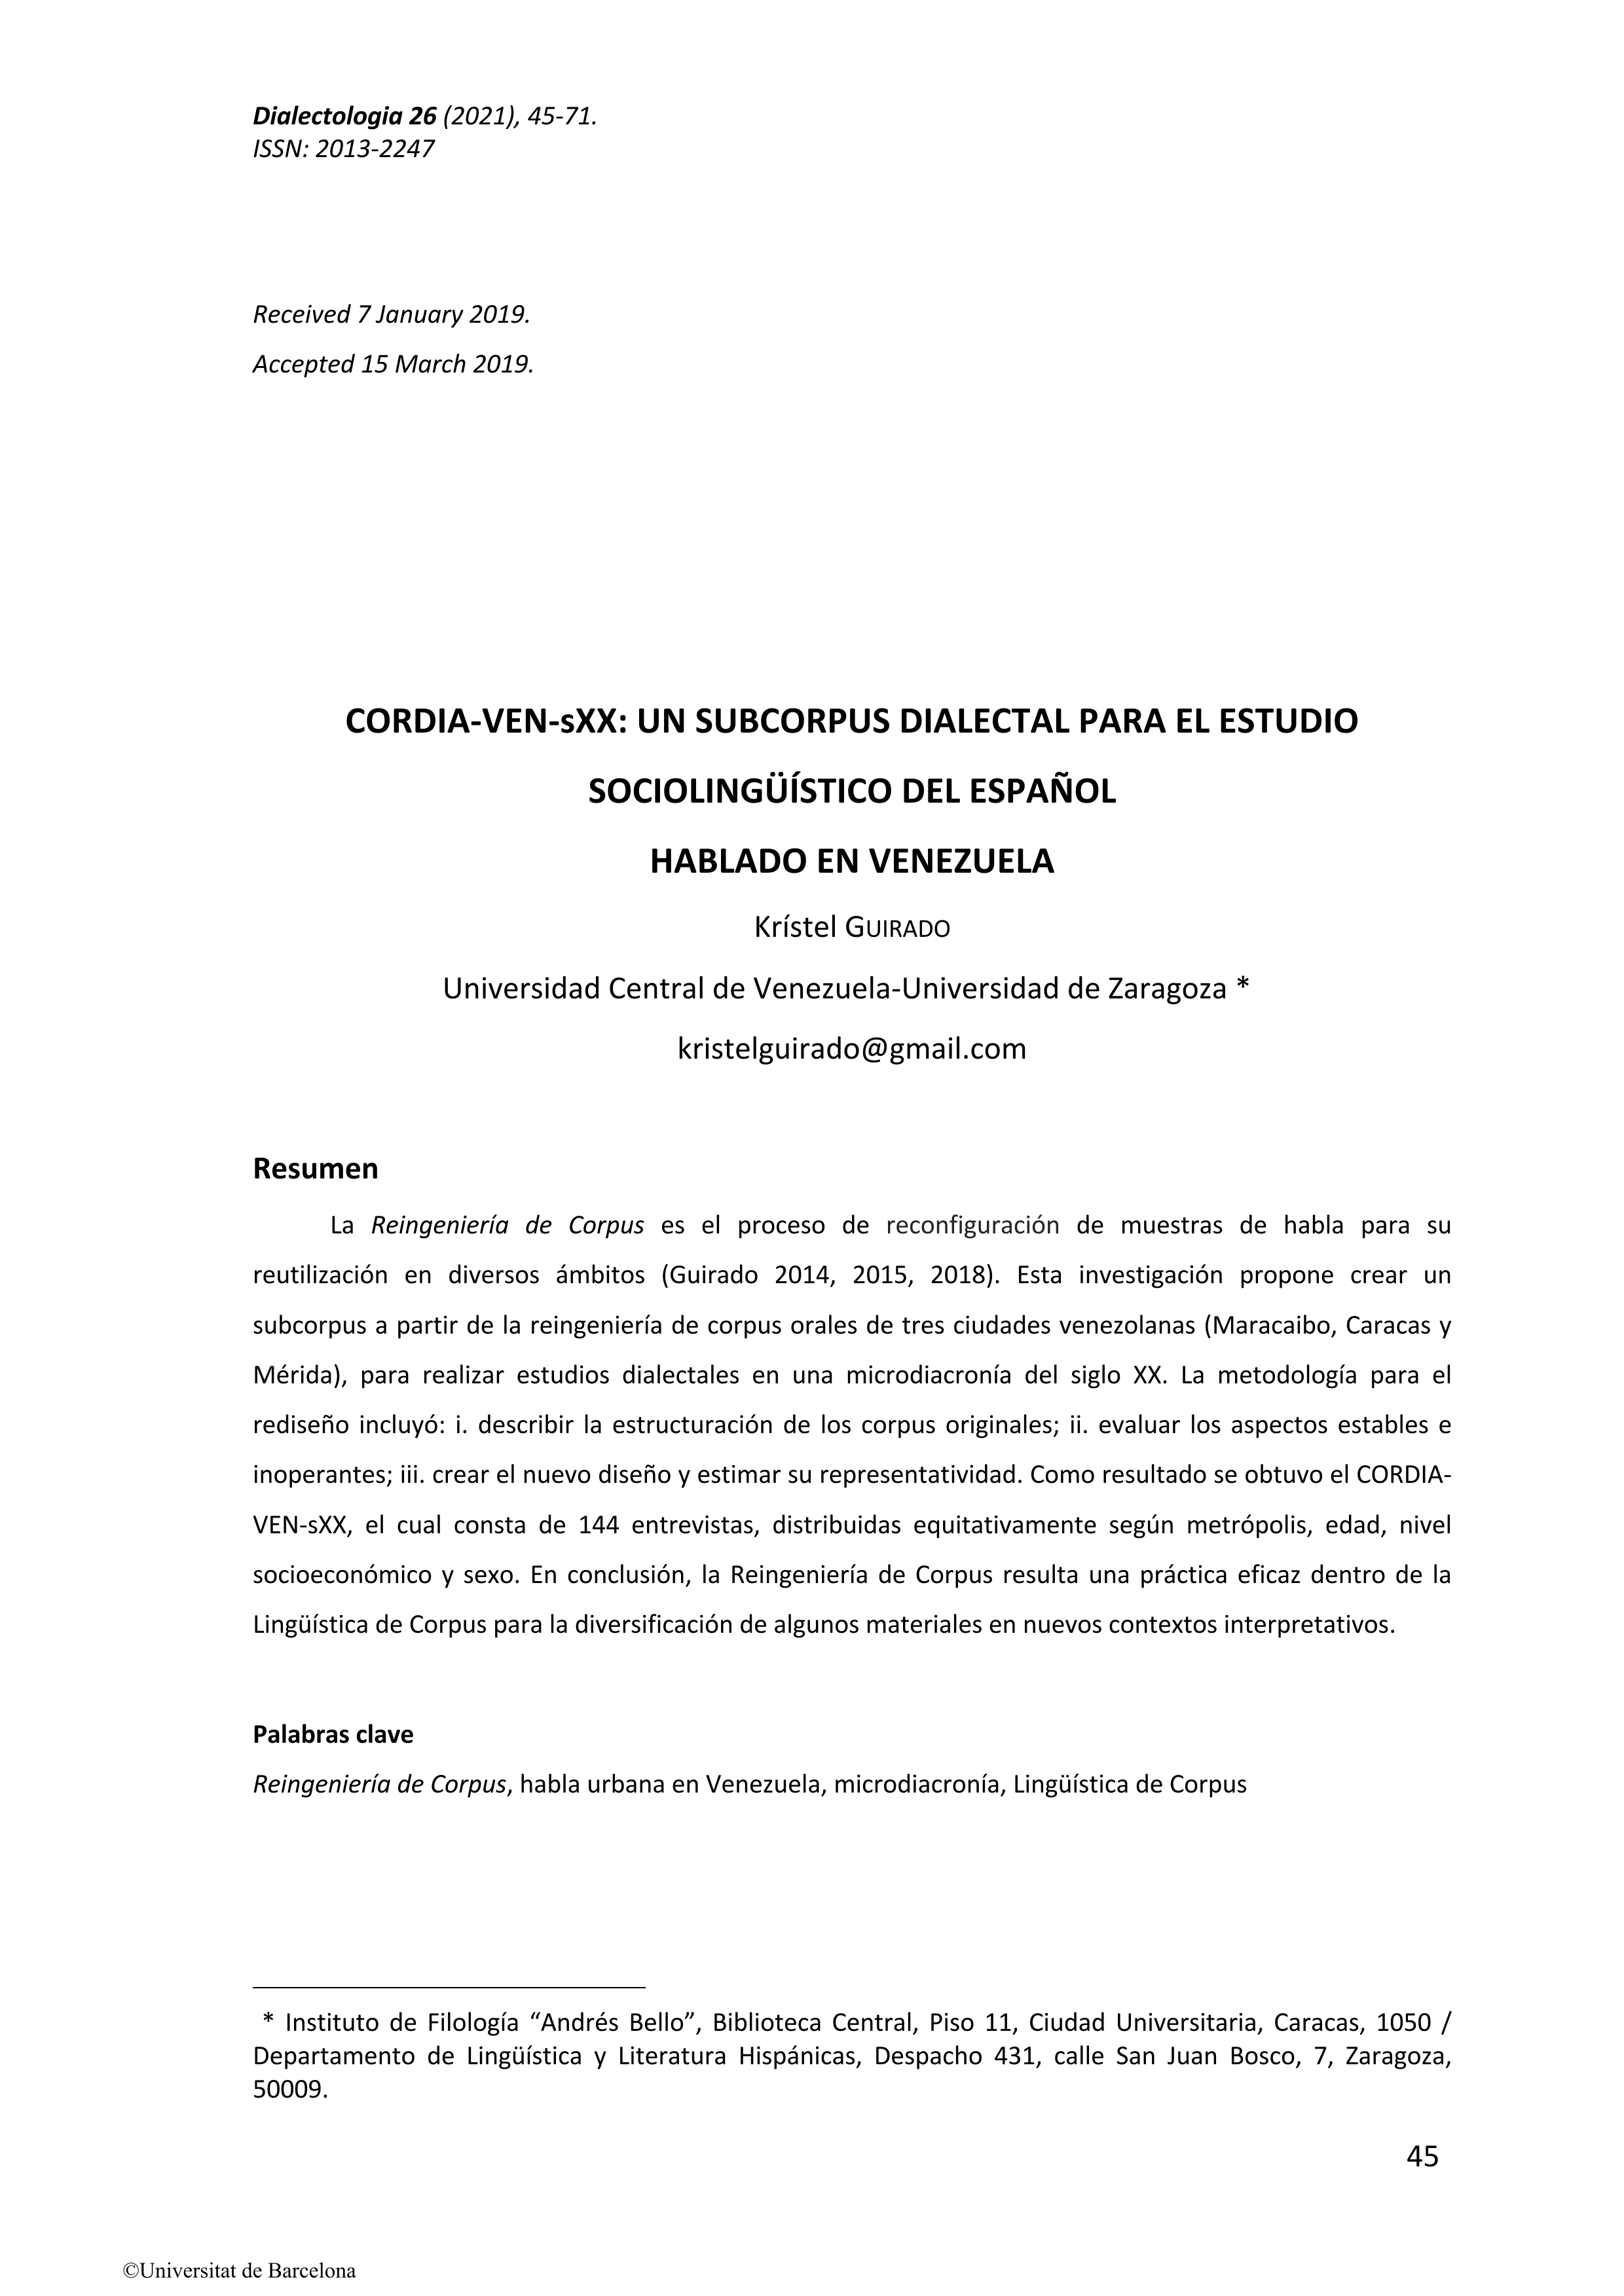 CORDIA-VEN-sXX: un subcorpus dialectal para el estudio sociolingüístico del español hablado en Venezuela